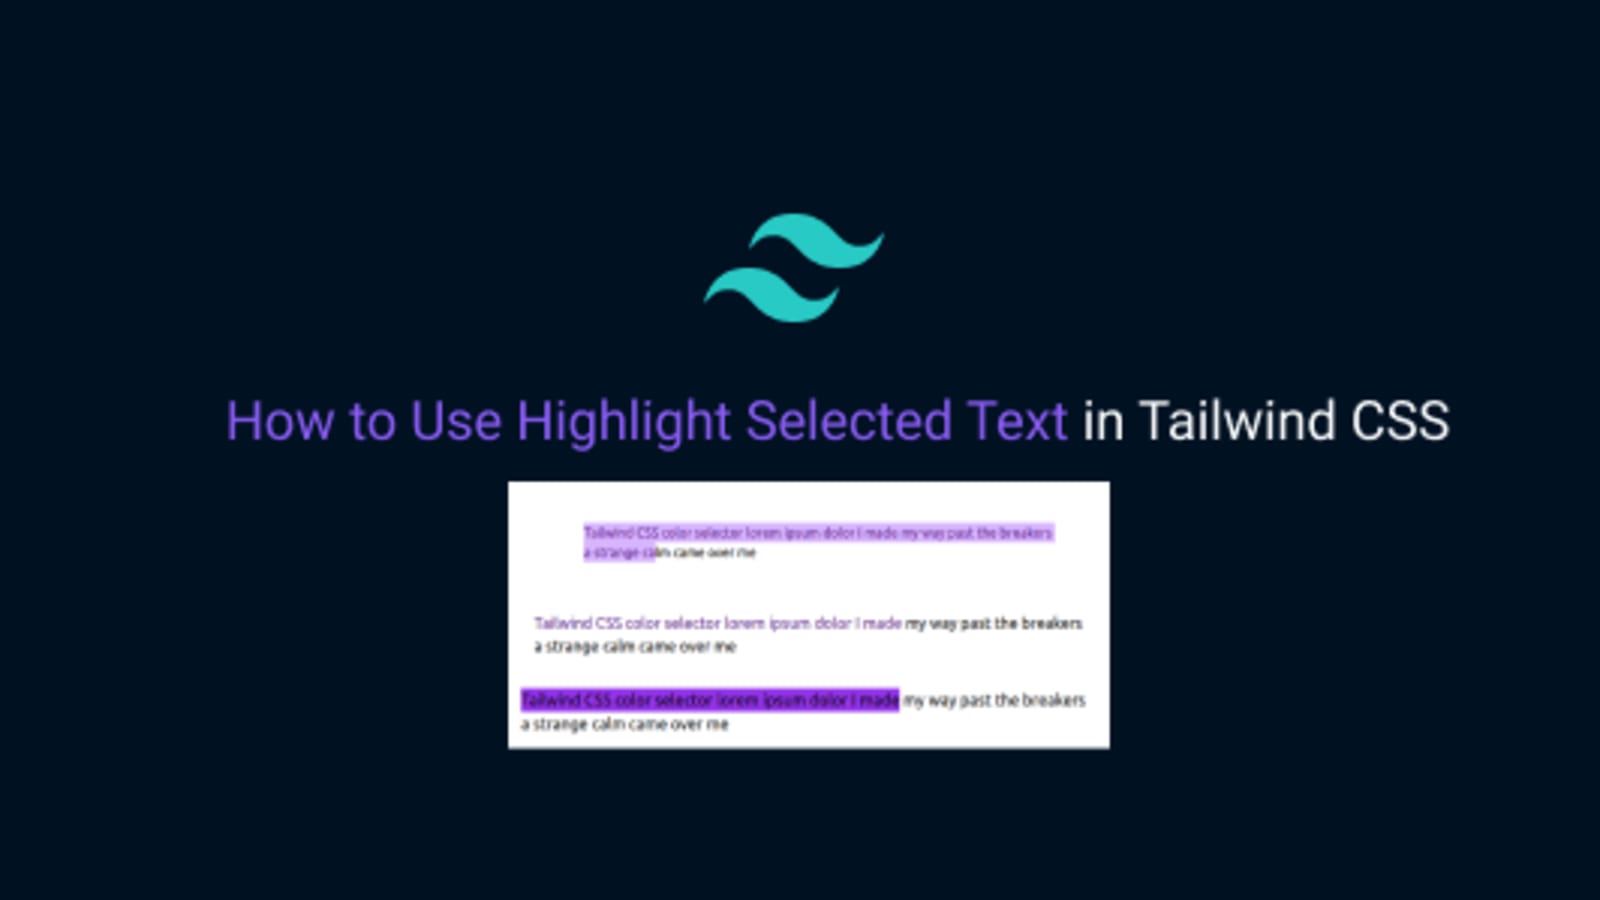 Highlight Selected Text là một tính năng tuyệt vời của Tailwind CSS giúp bạn sử dụng đơn giản và tiện lợi. Hãy cùng khám phá cách sử dụng tính năng này để tạo nên những giao diện web tuyệt đẹp với Tailwind CSS.